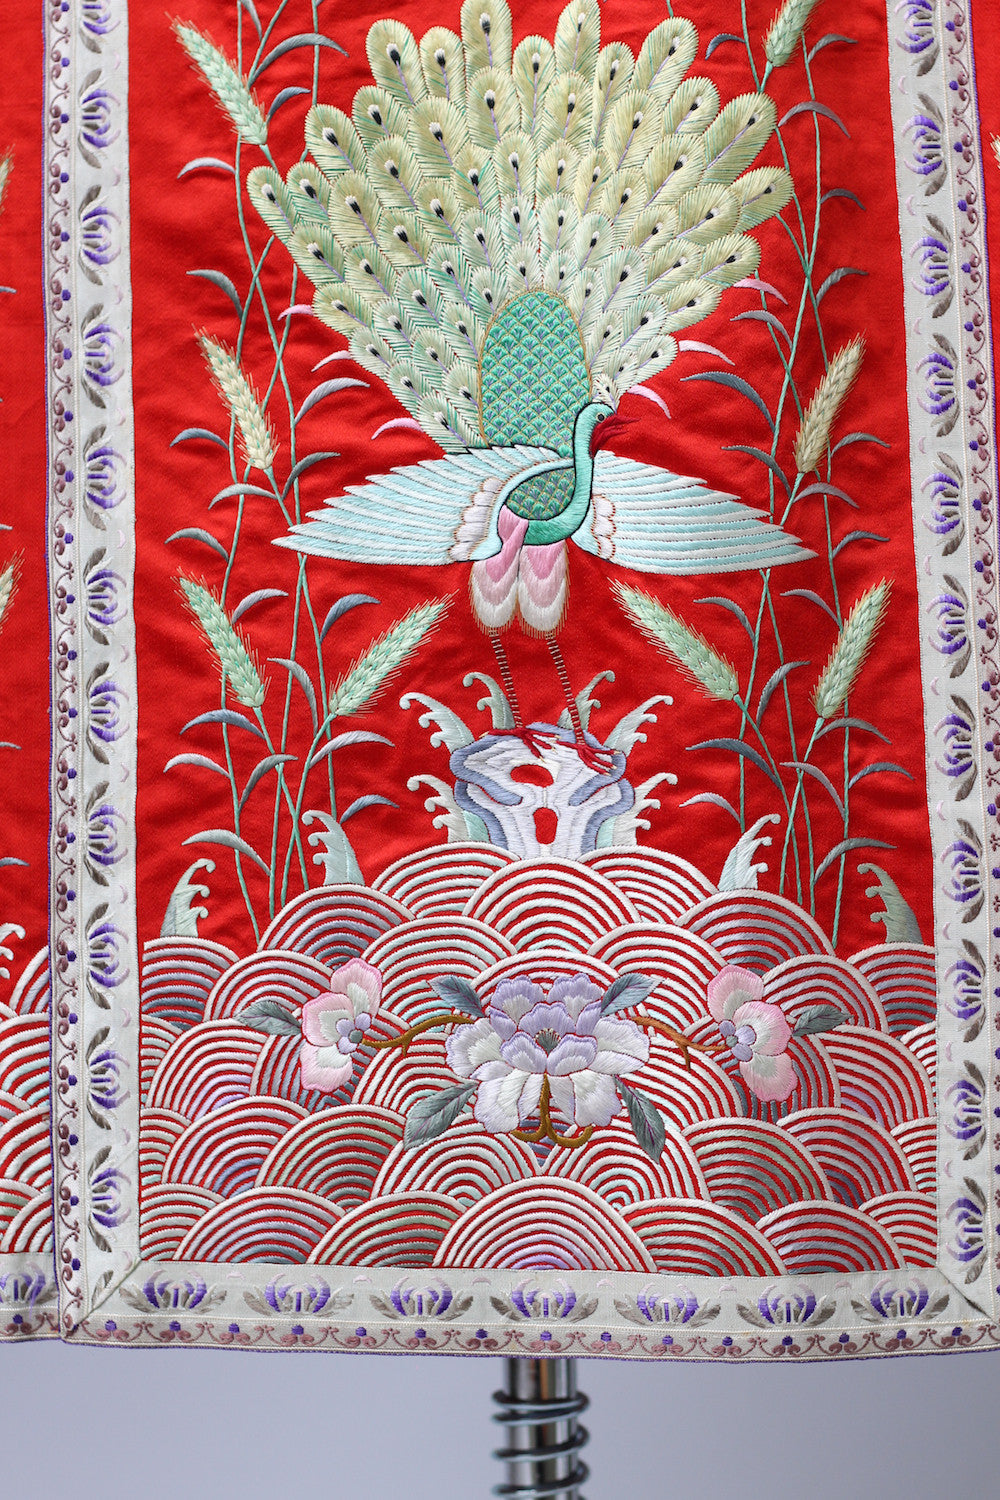 1920s Red Satin Embroidered Korean Skirt